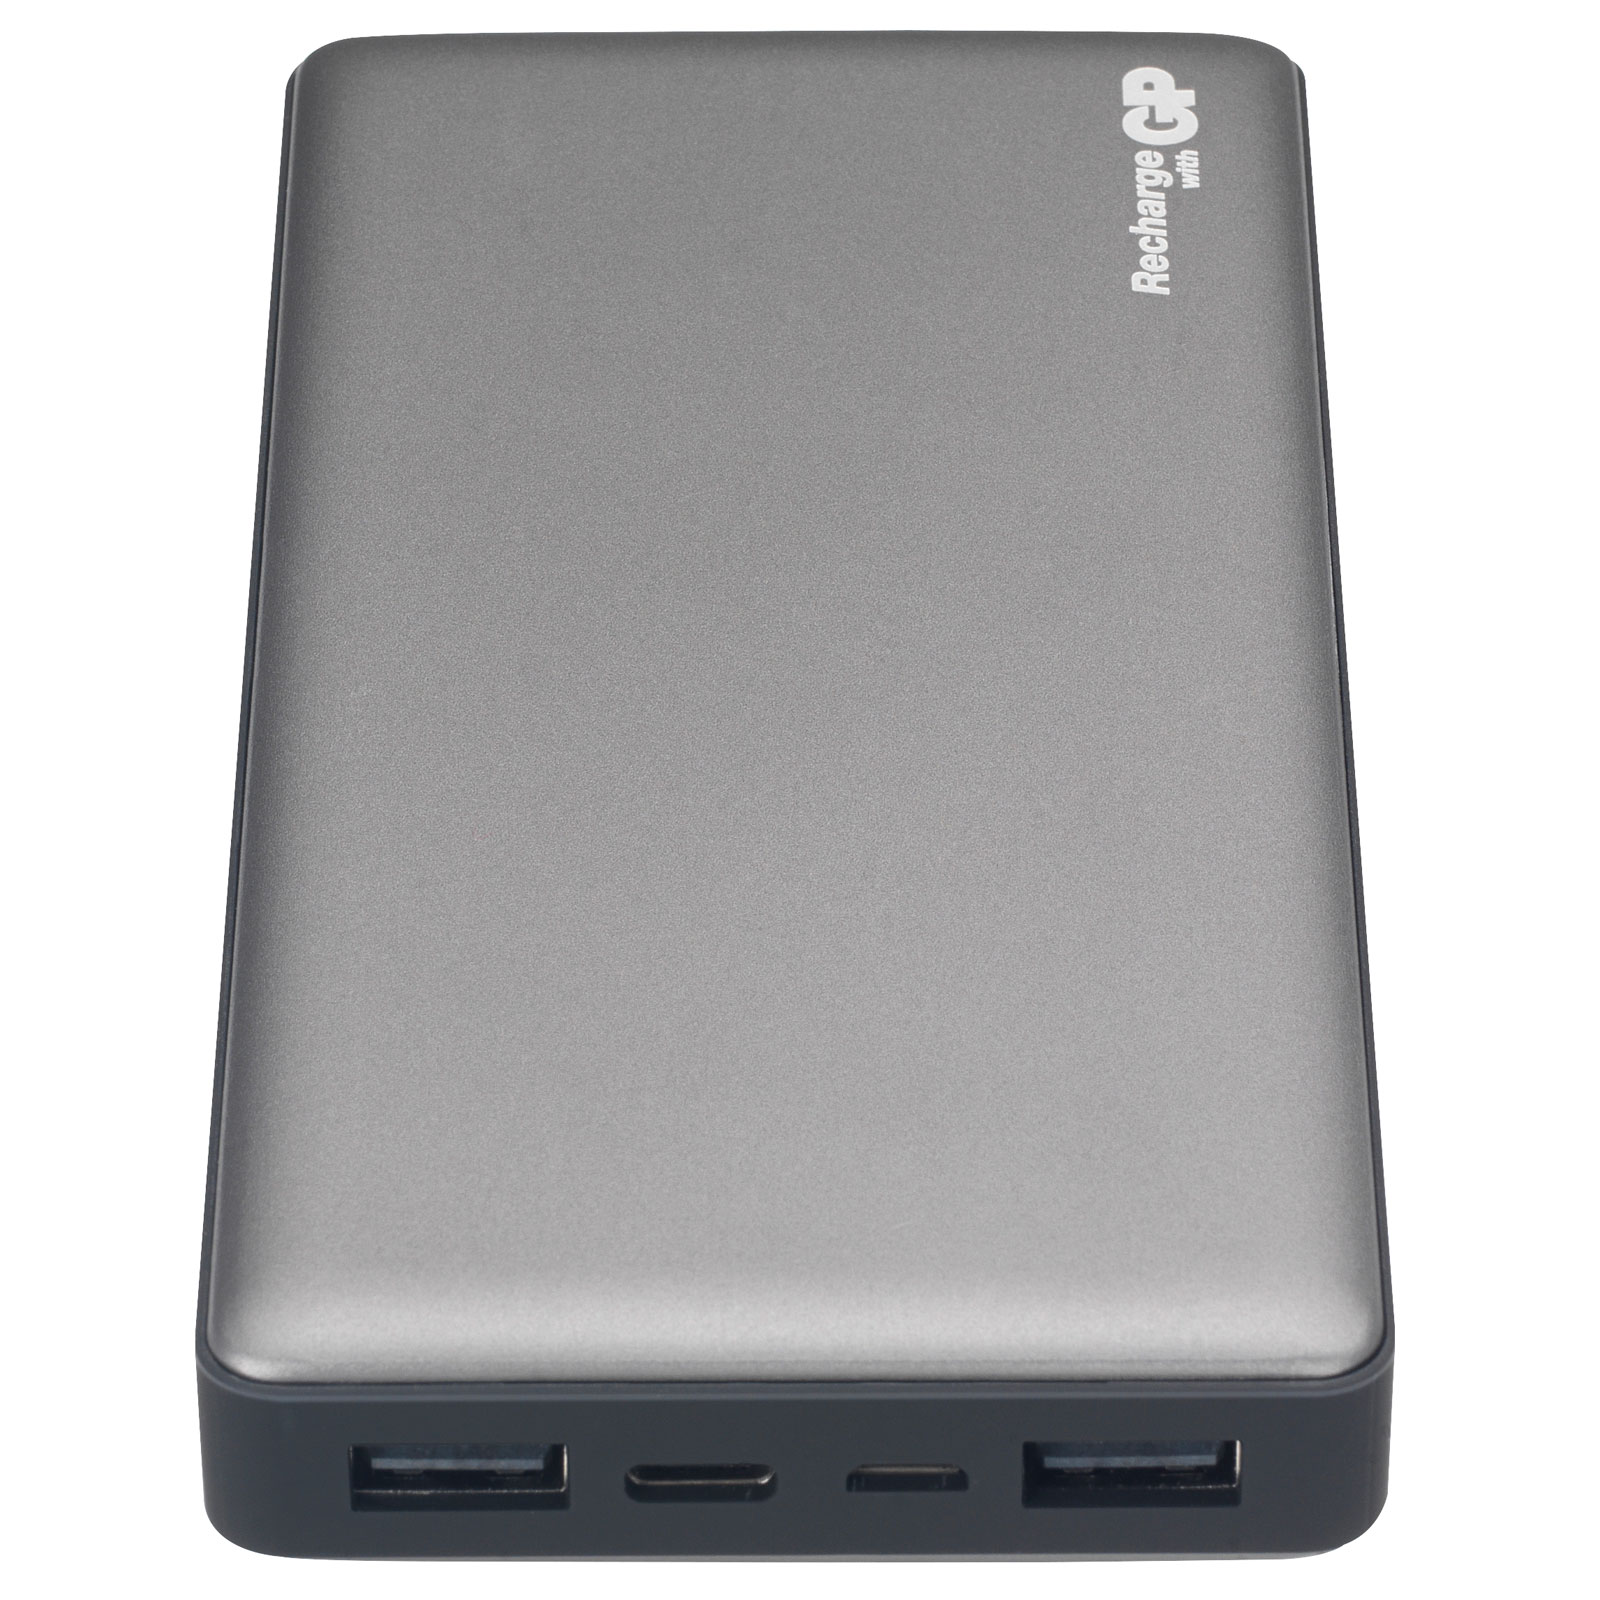 GP Batteries GPACCMP15001 M-Series Portable PowerBank, 15,000mAh Grey